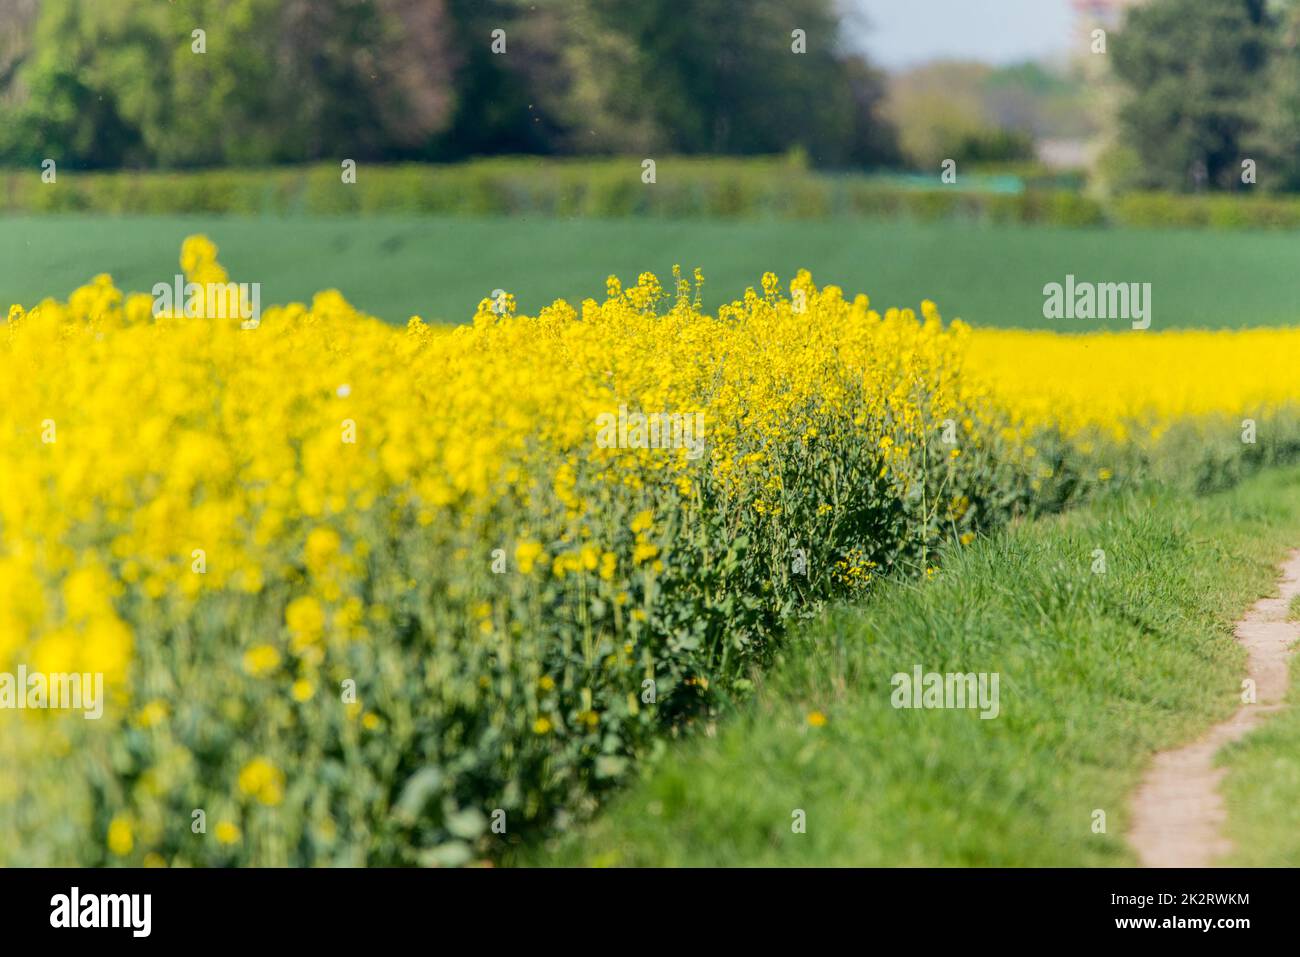 Ein gelber Rapssamen - Landwirtschaft Stockfoto